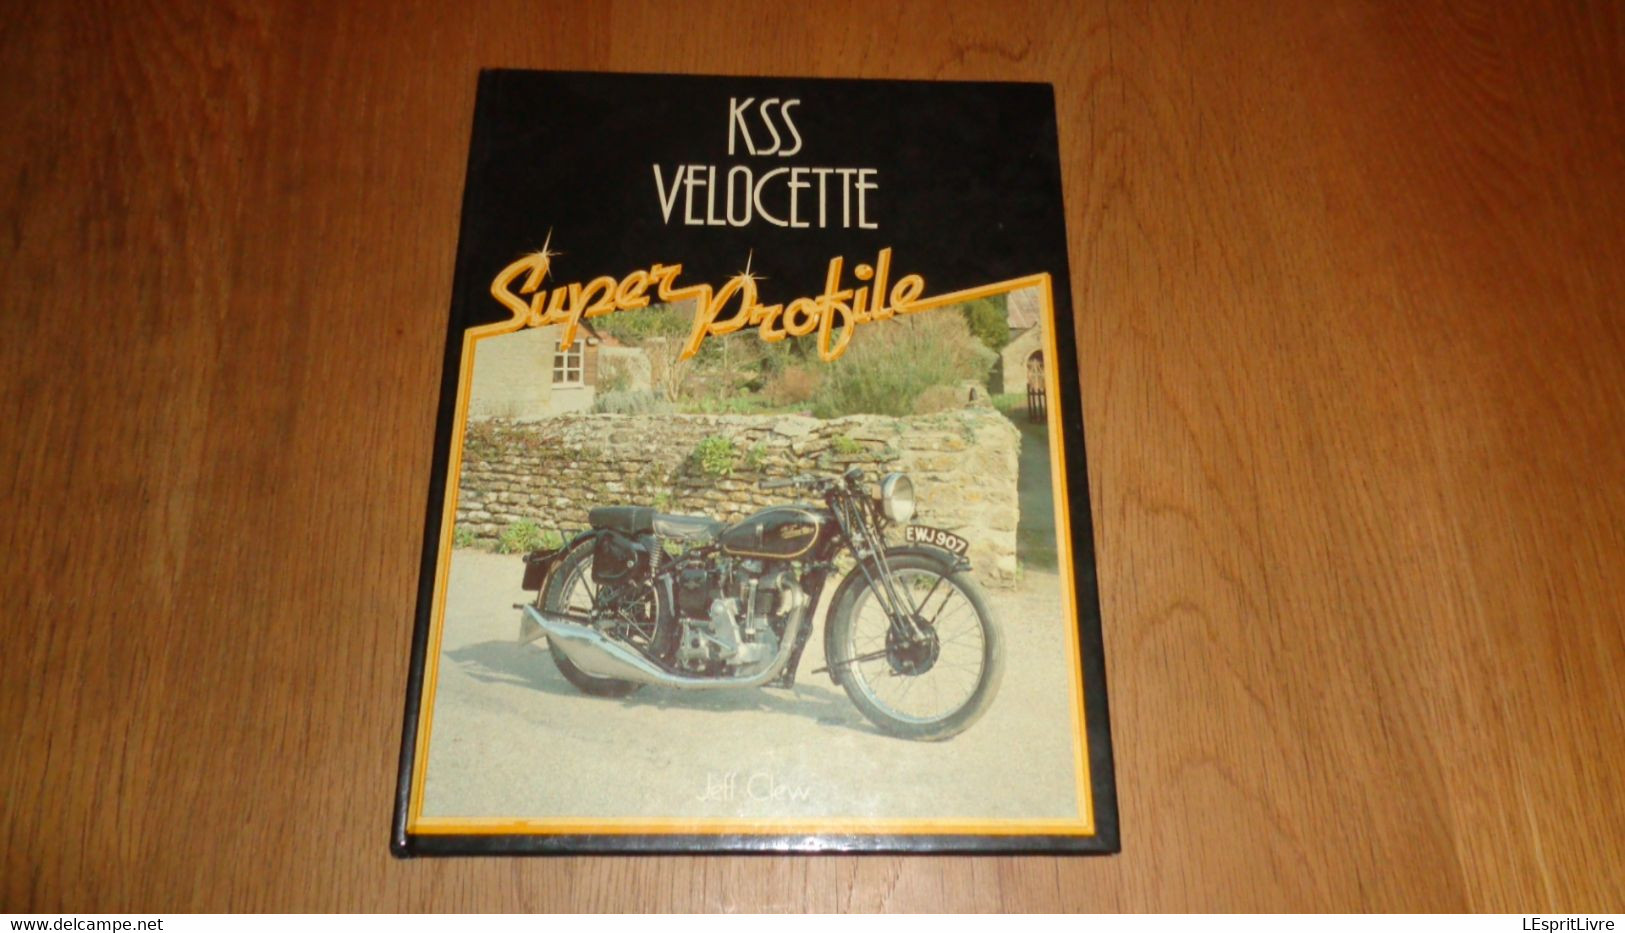 KSS VELOCETTE Super Profile Motorcycle Motocyclette Moto Motor Sport Model K 350 CC Spécification Engine - Themengebiet Sammeln